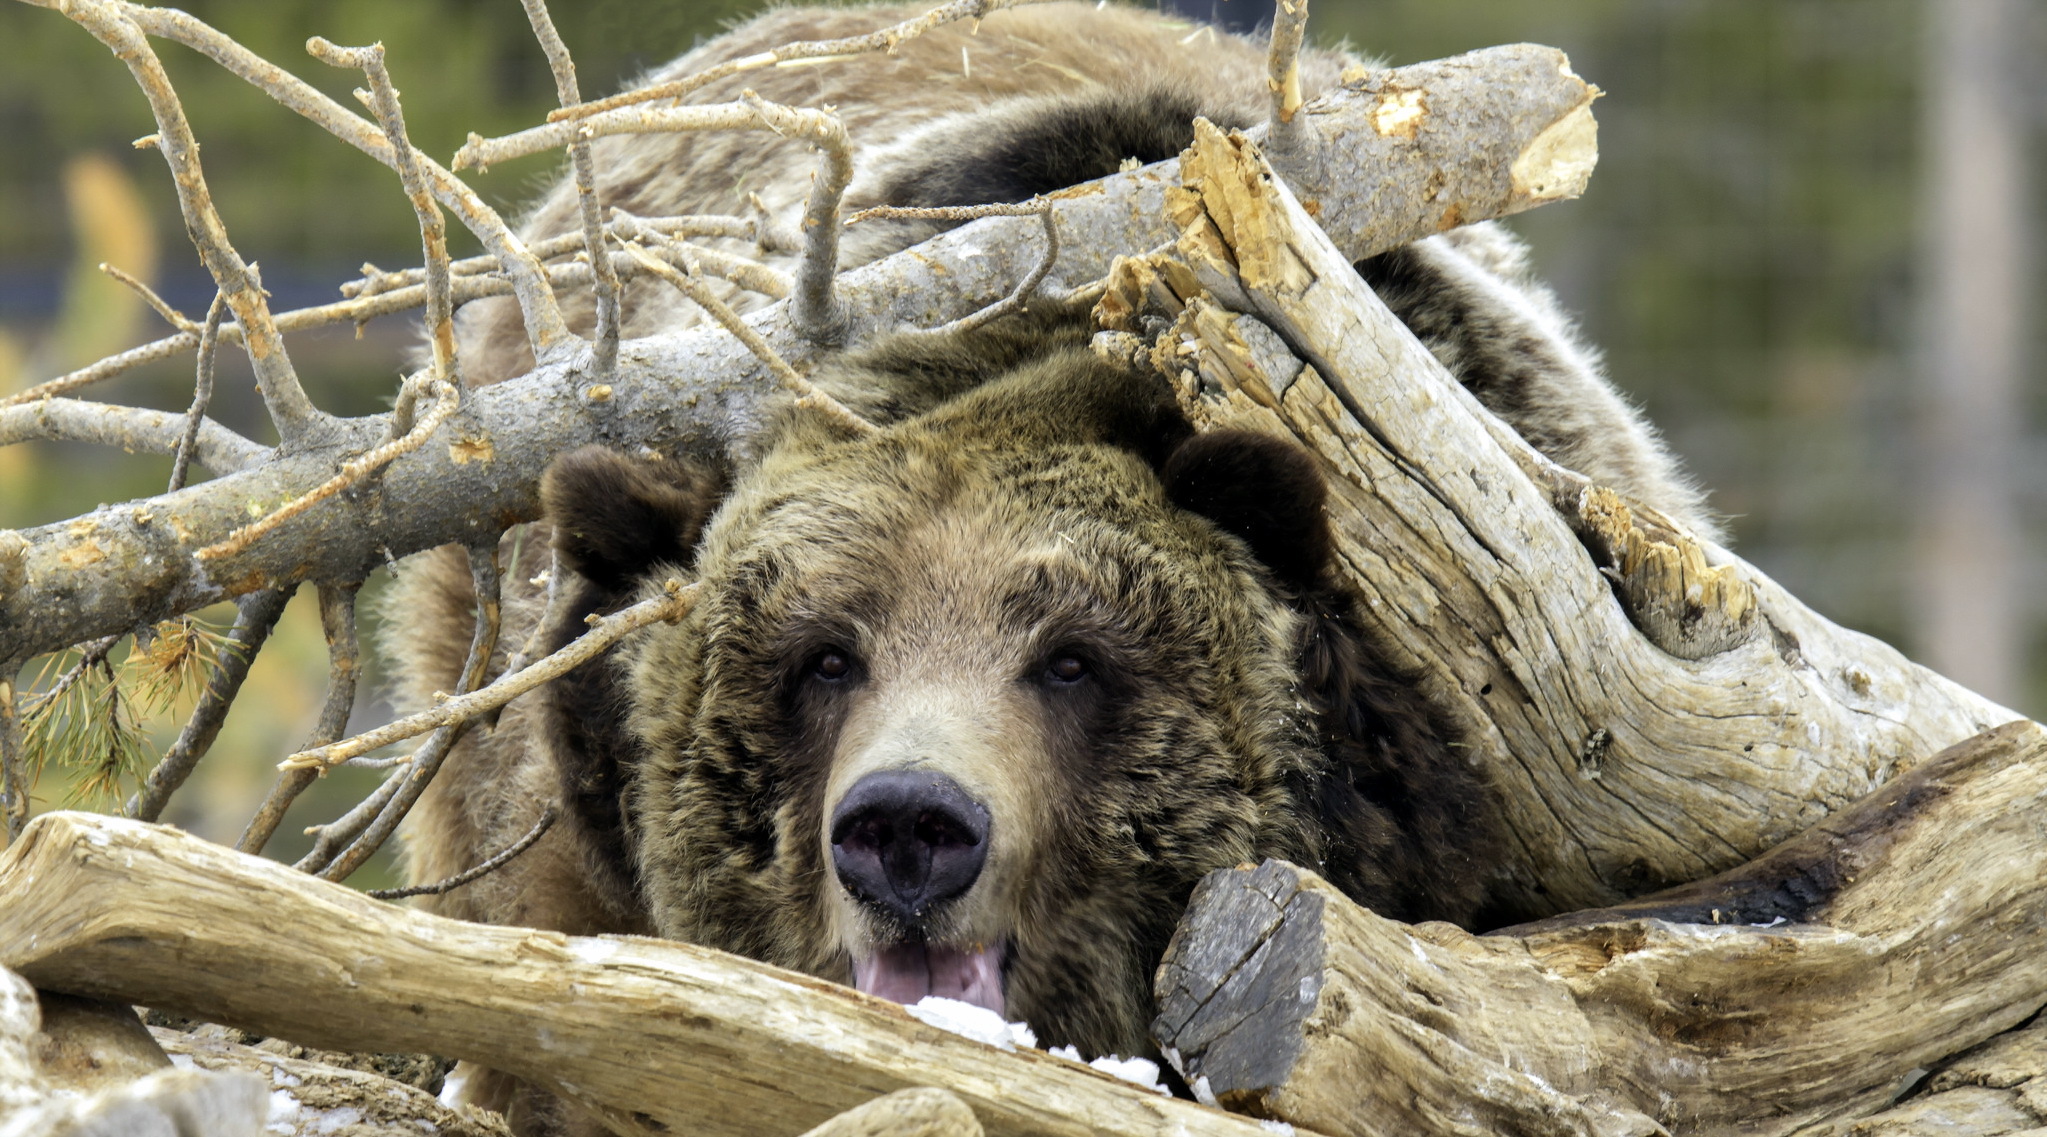 Медведь в спячке